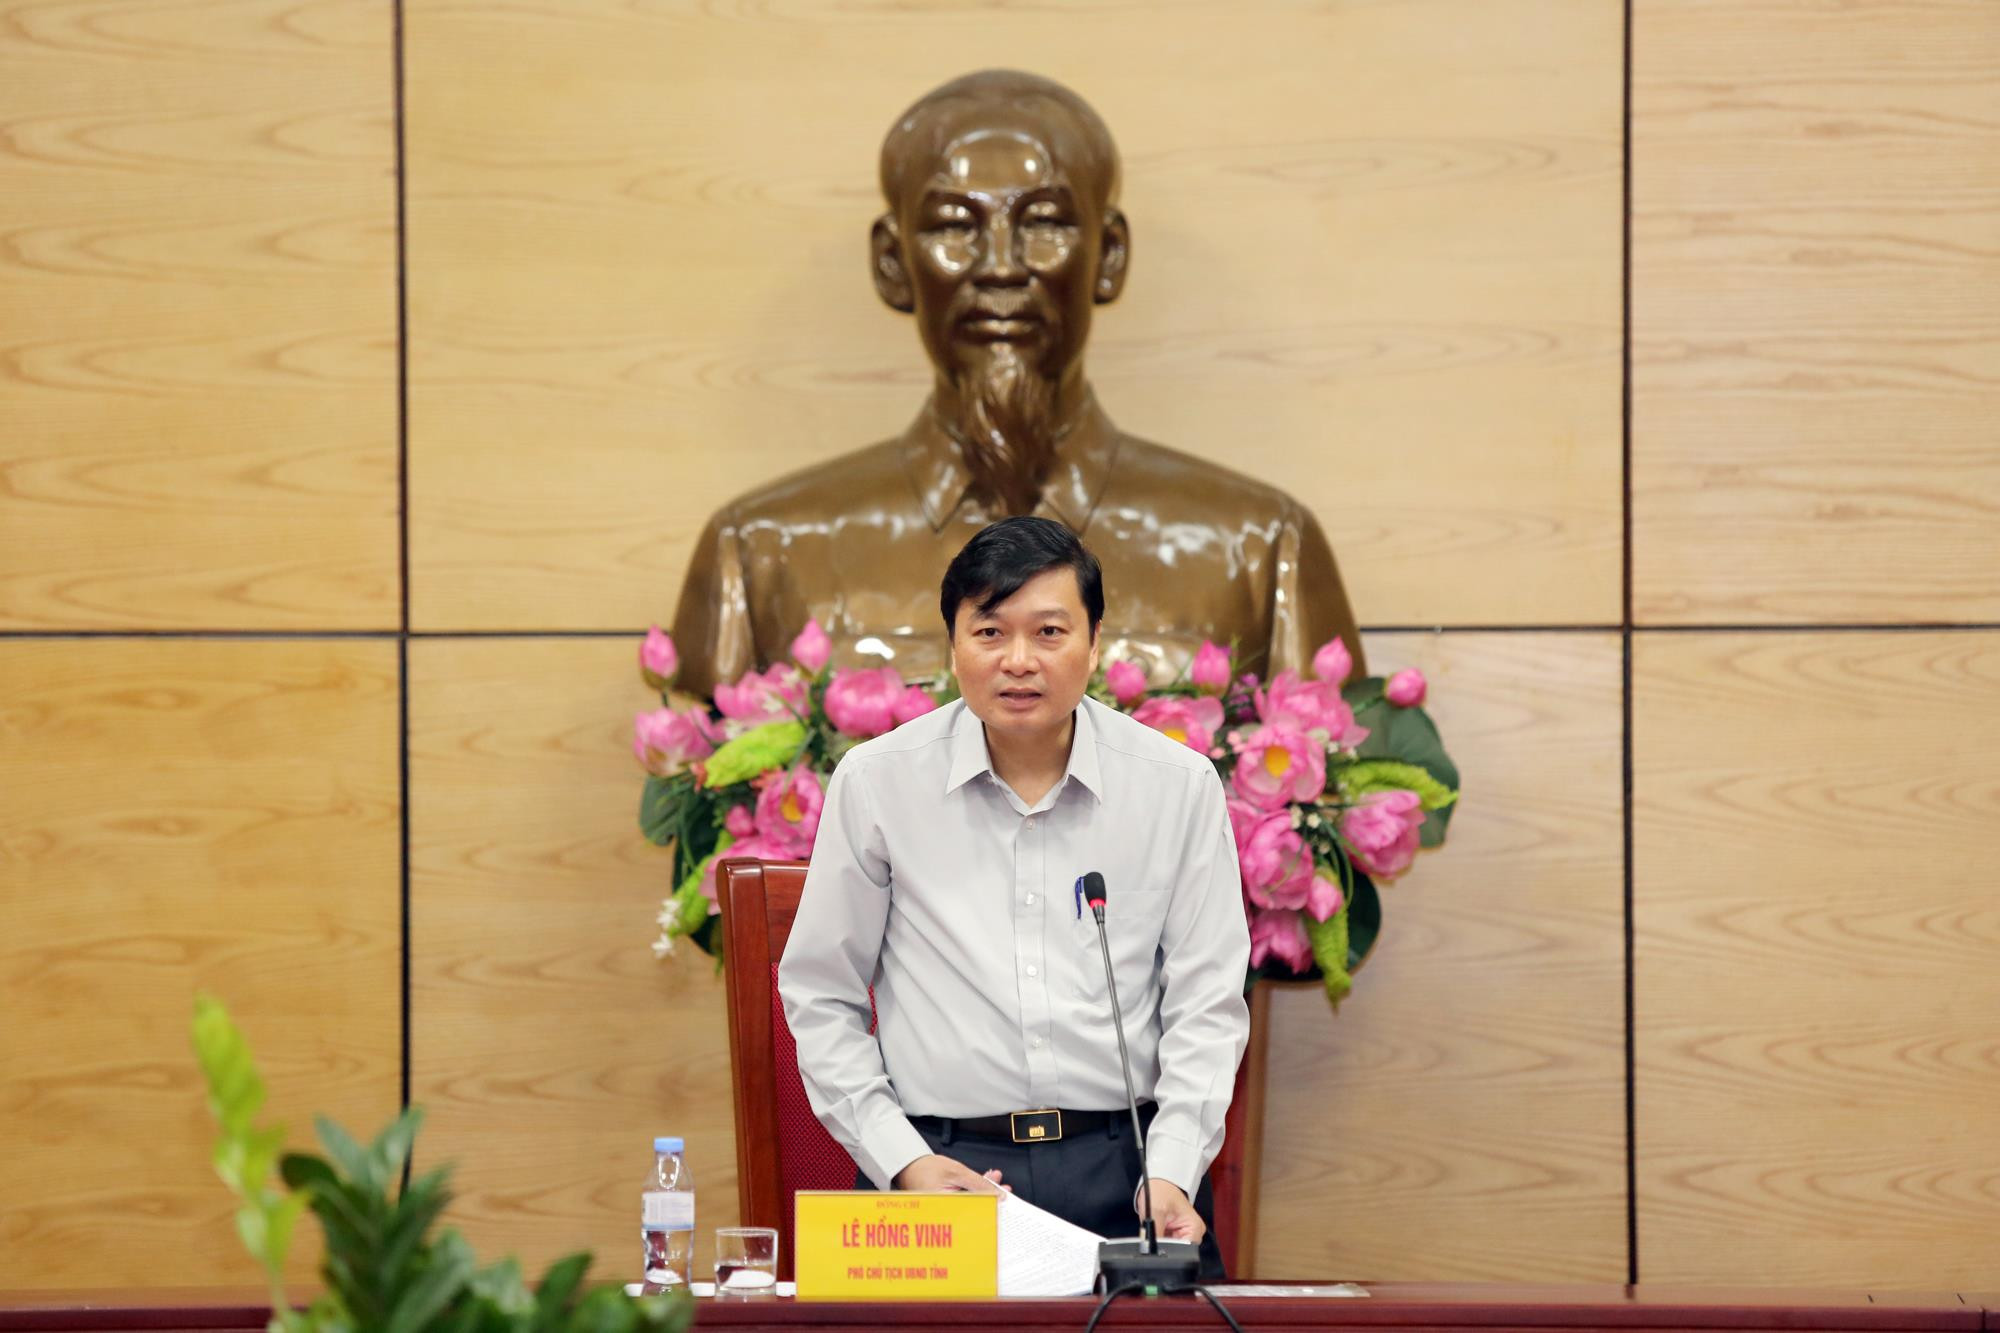 Đồng chí Lê Hồng Vinh - Ủy viên Ban Thường vụ Tỉnh ủy, Phó Chủ tịch UBND tỉnh